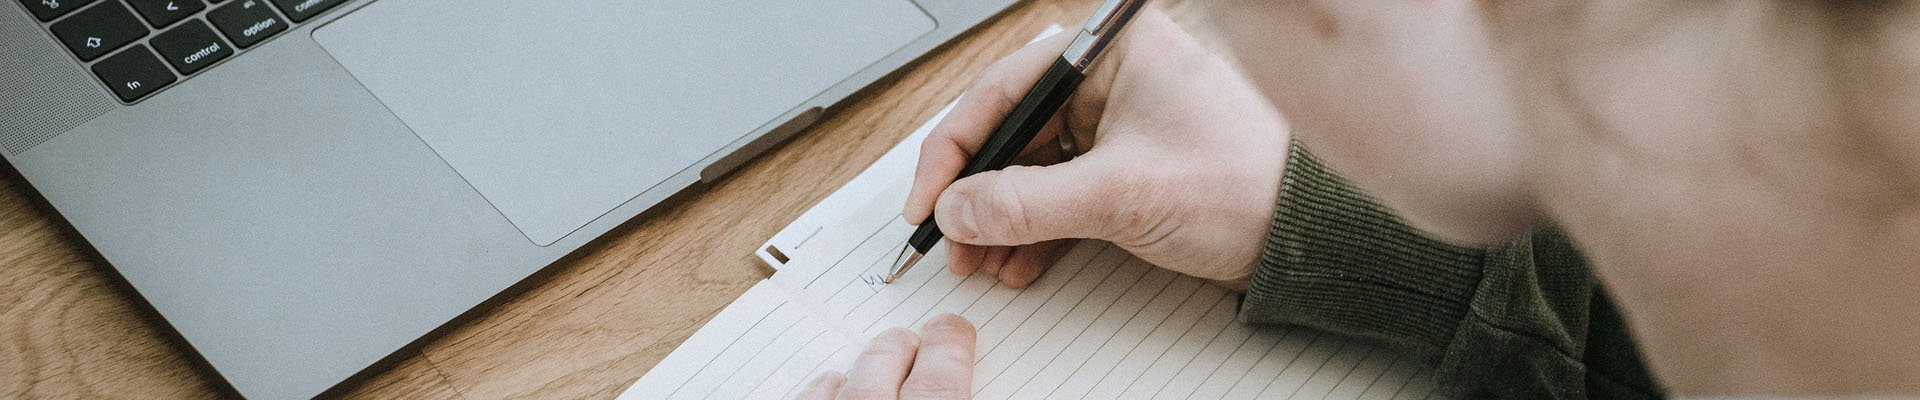 schrijven met balpen in een schrift